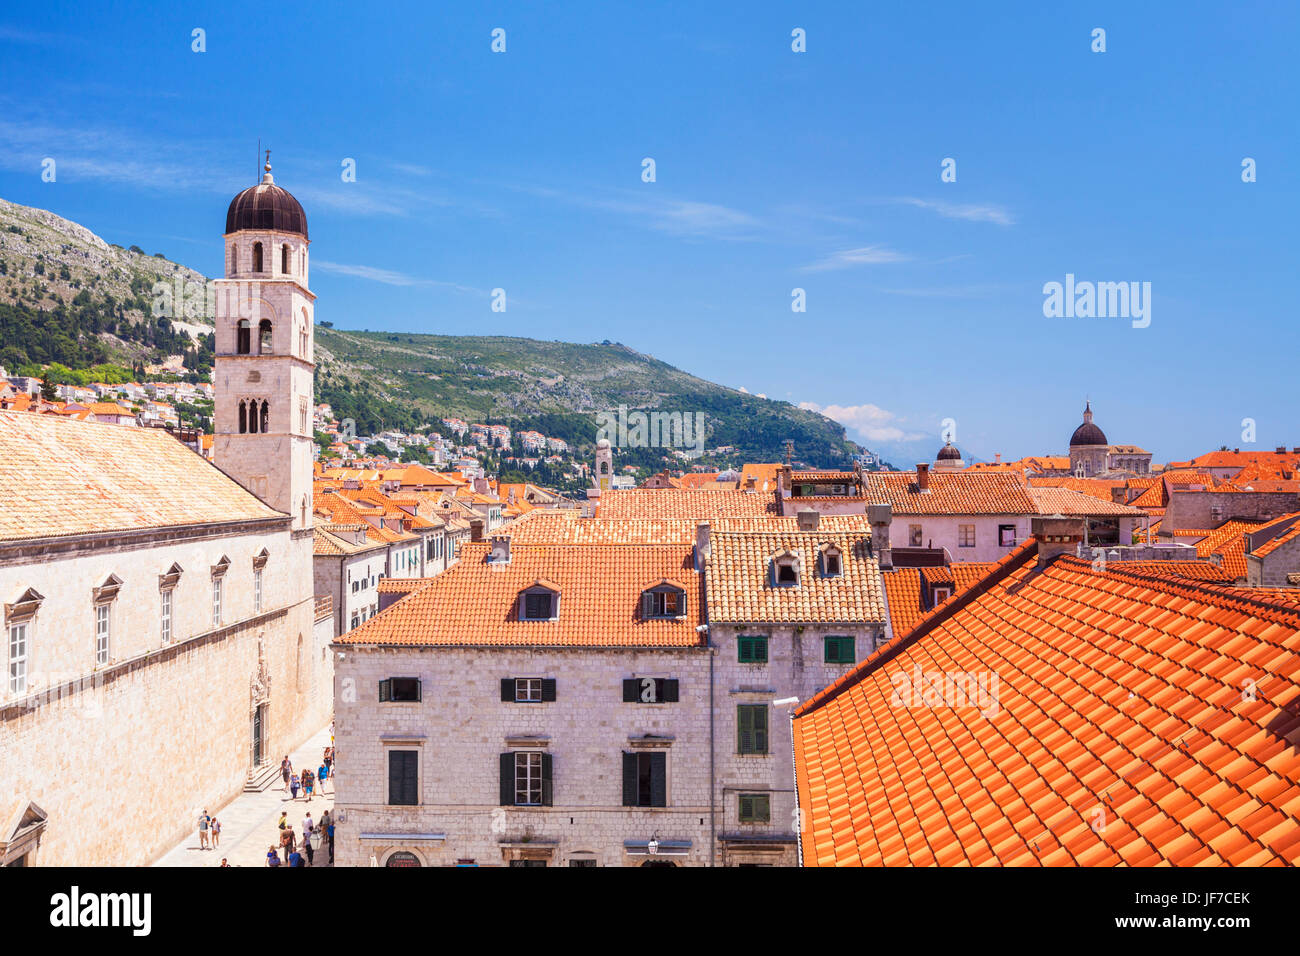 Croazia Dubrovnik Croazia dalmata di Dubrovnik Città vecchia Dubrovnik tegole rosse sui tetti di vecchie case blue sky paese vecchio di Dubrovnik Croazia Europa Foto Stock